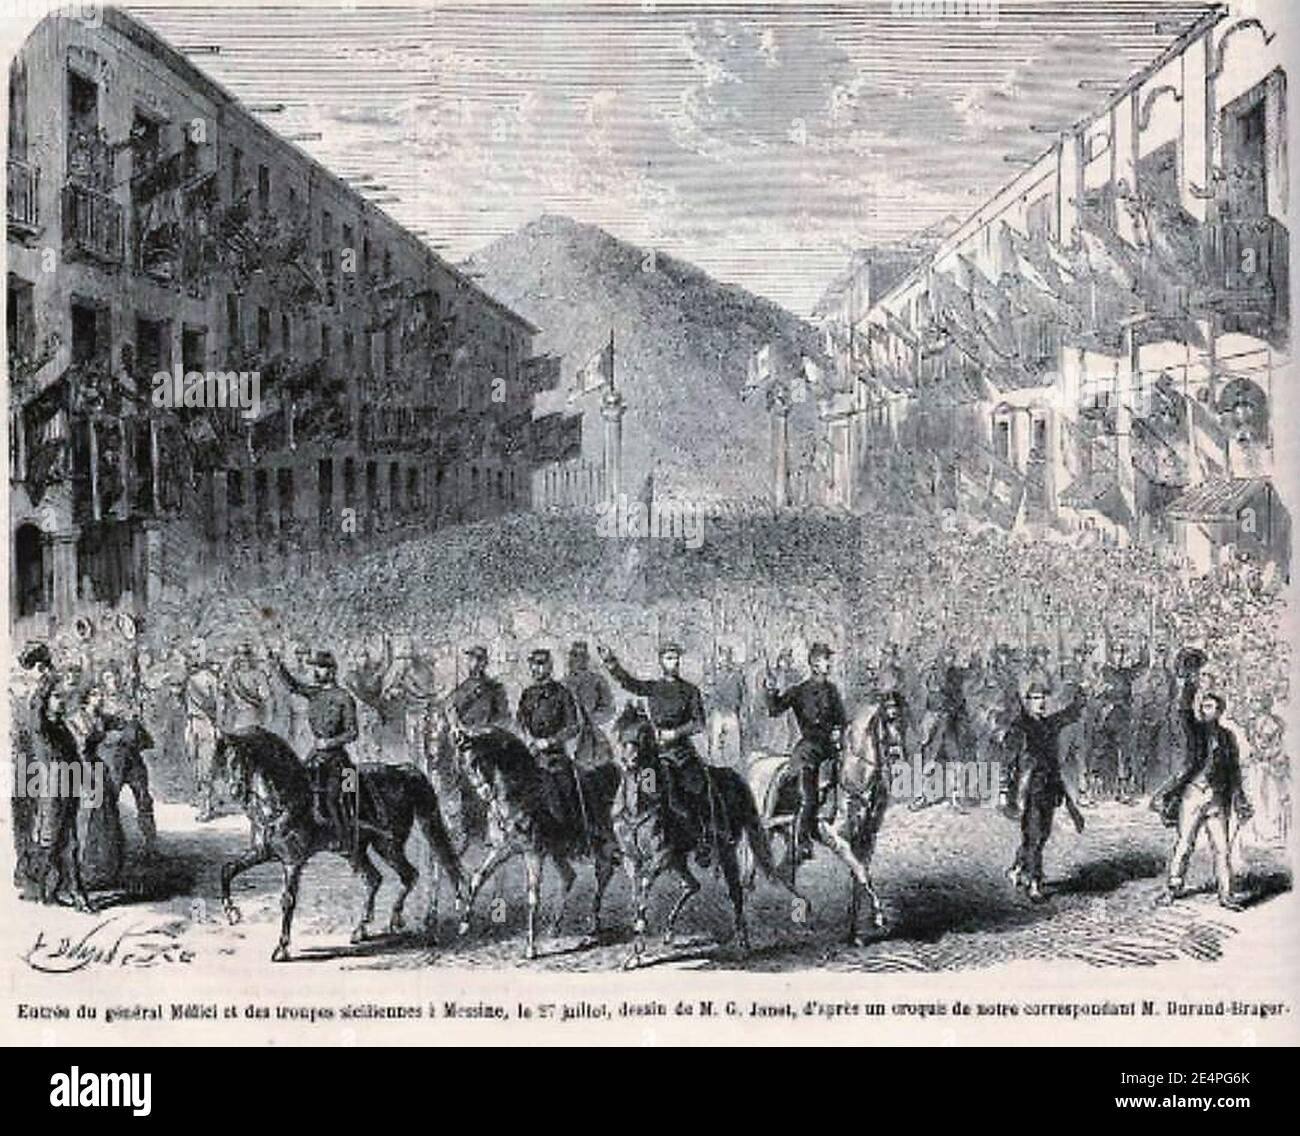 Medici entra a Messina il 27 luglio - LMI 11-8-1860. Stockfoto